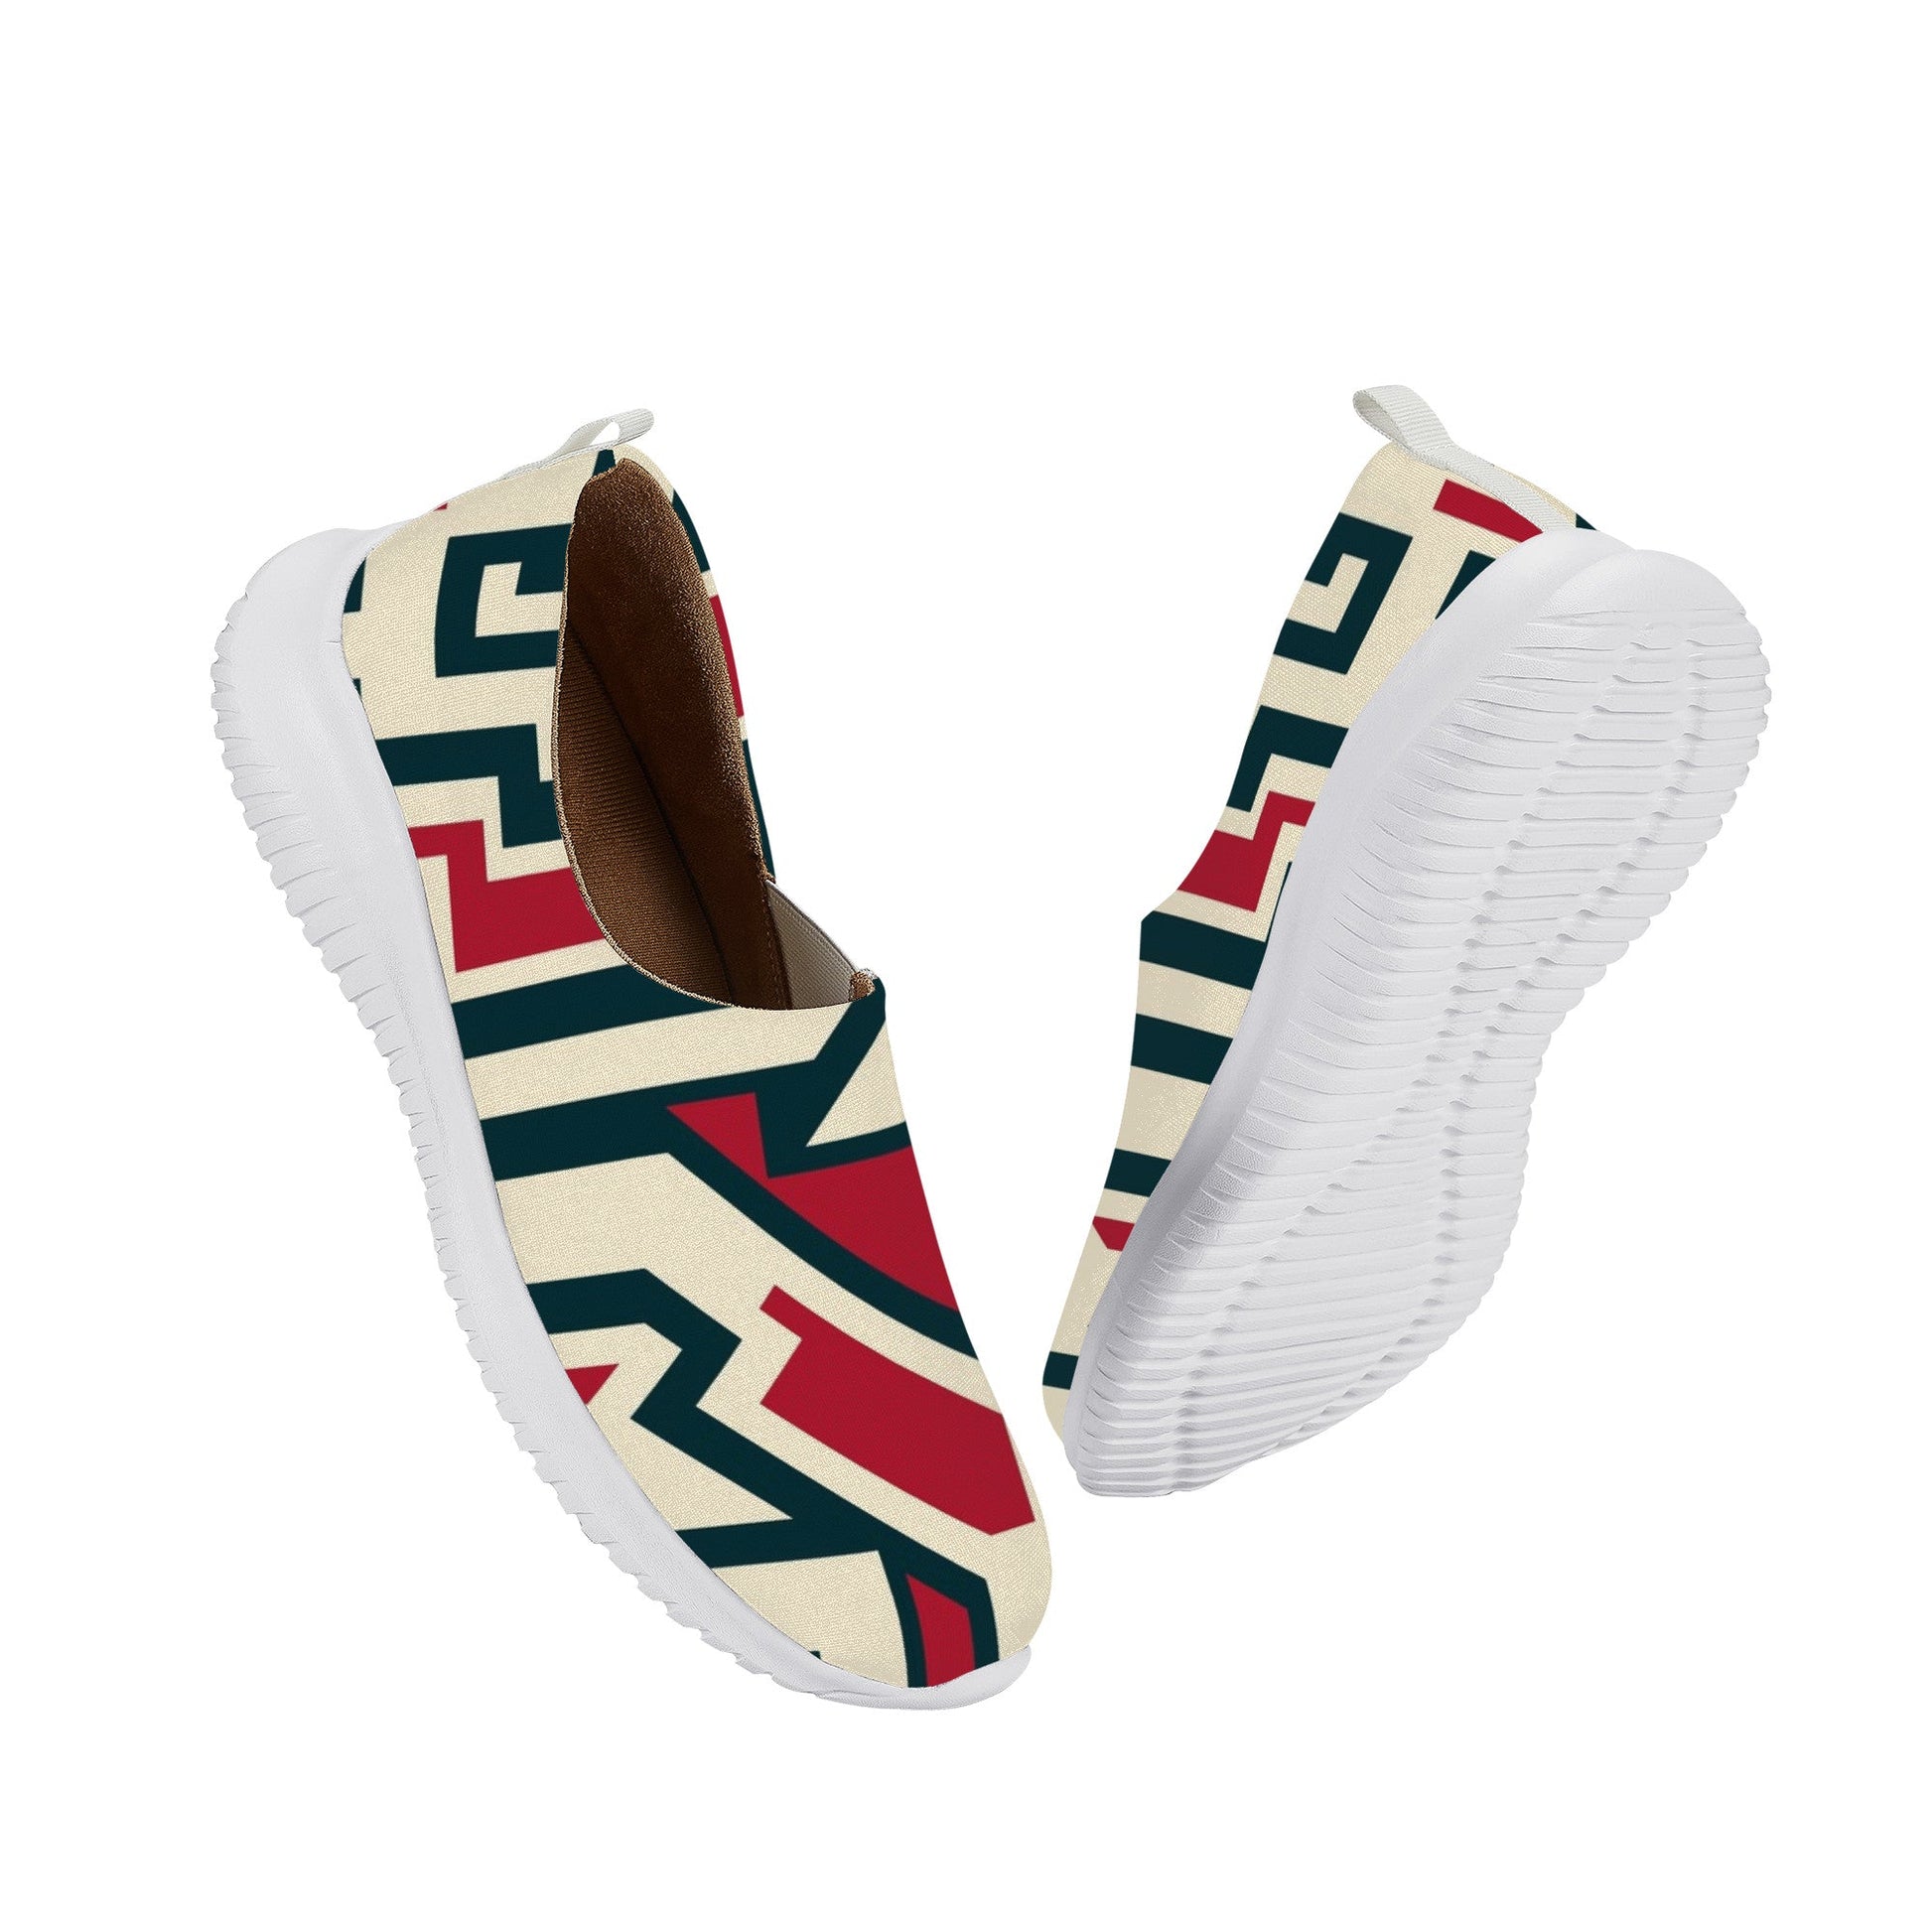 Designer Women's Slip On Casual Shoes-LQ X2 Colloid Colors 